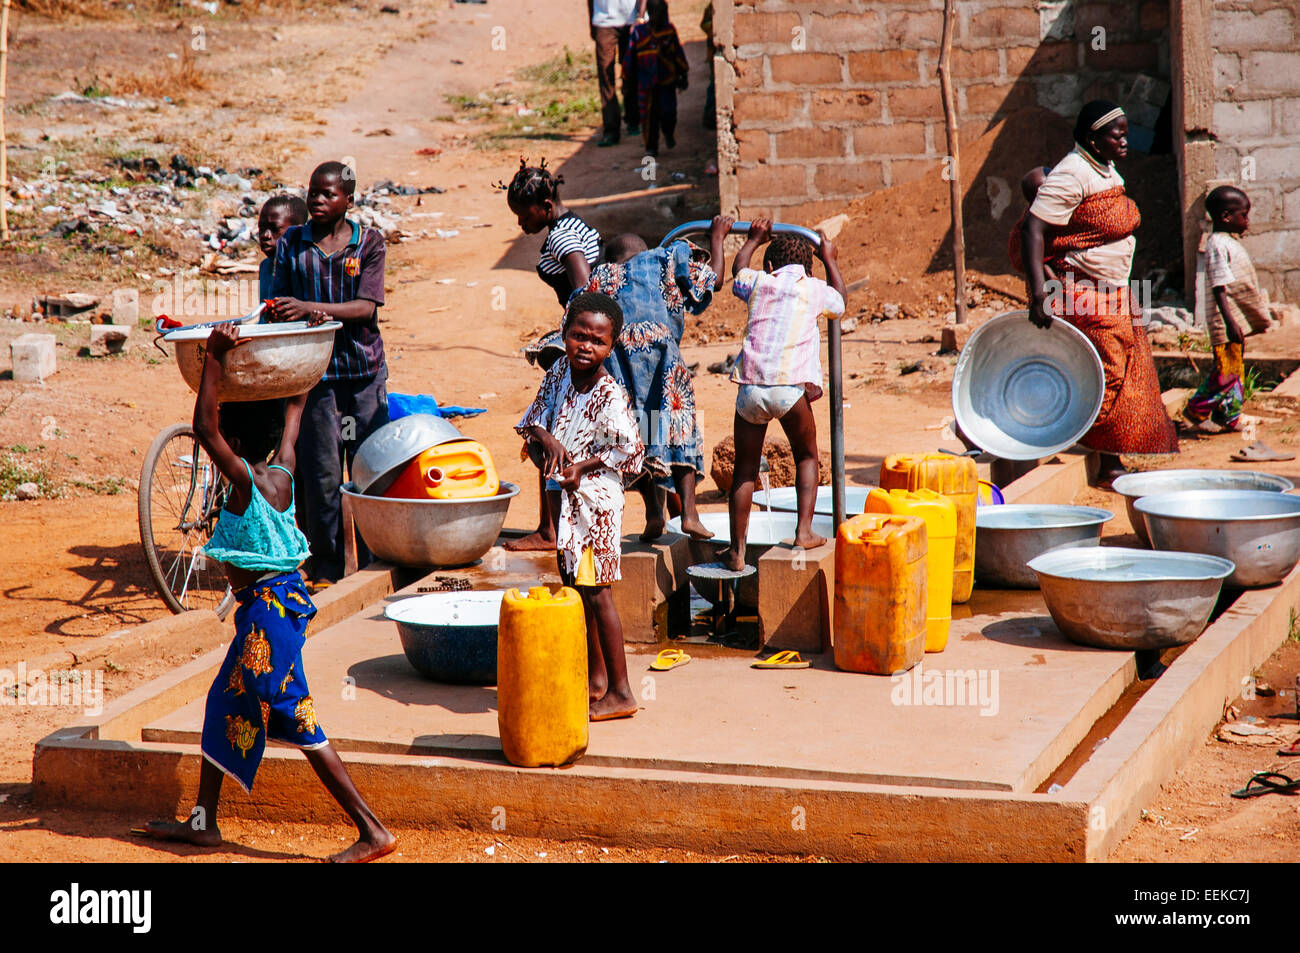 Dessin d'enfants de l'eau d'un puits dans un village, au Bénin. Banque D'Images